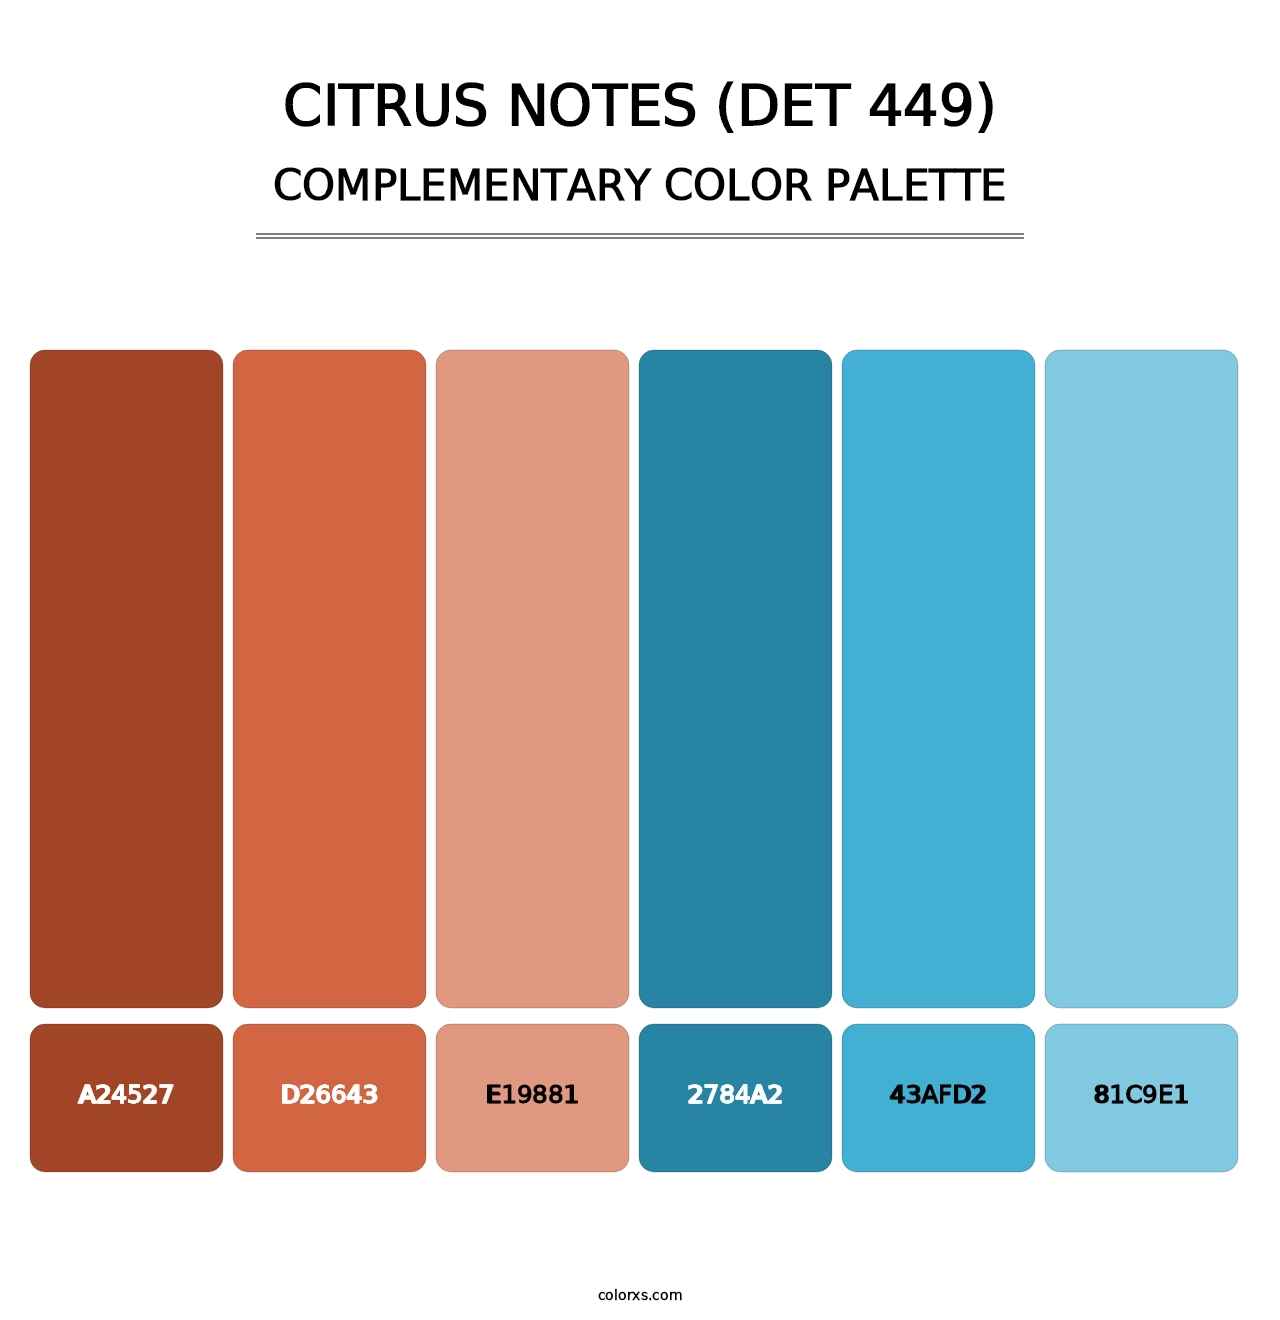 Citrus Notes (DET 449) - Complementary Color Palette